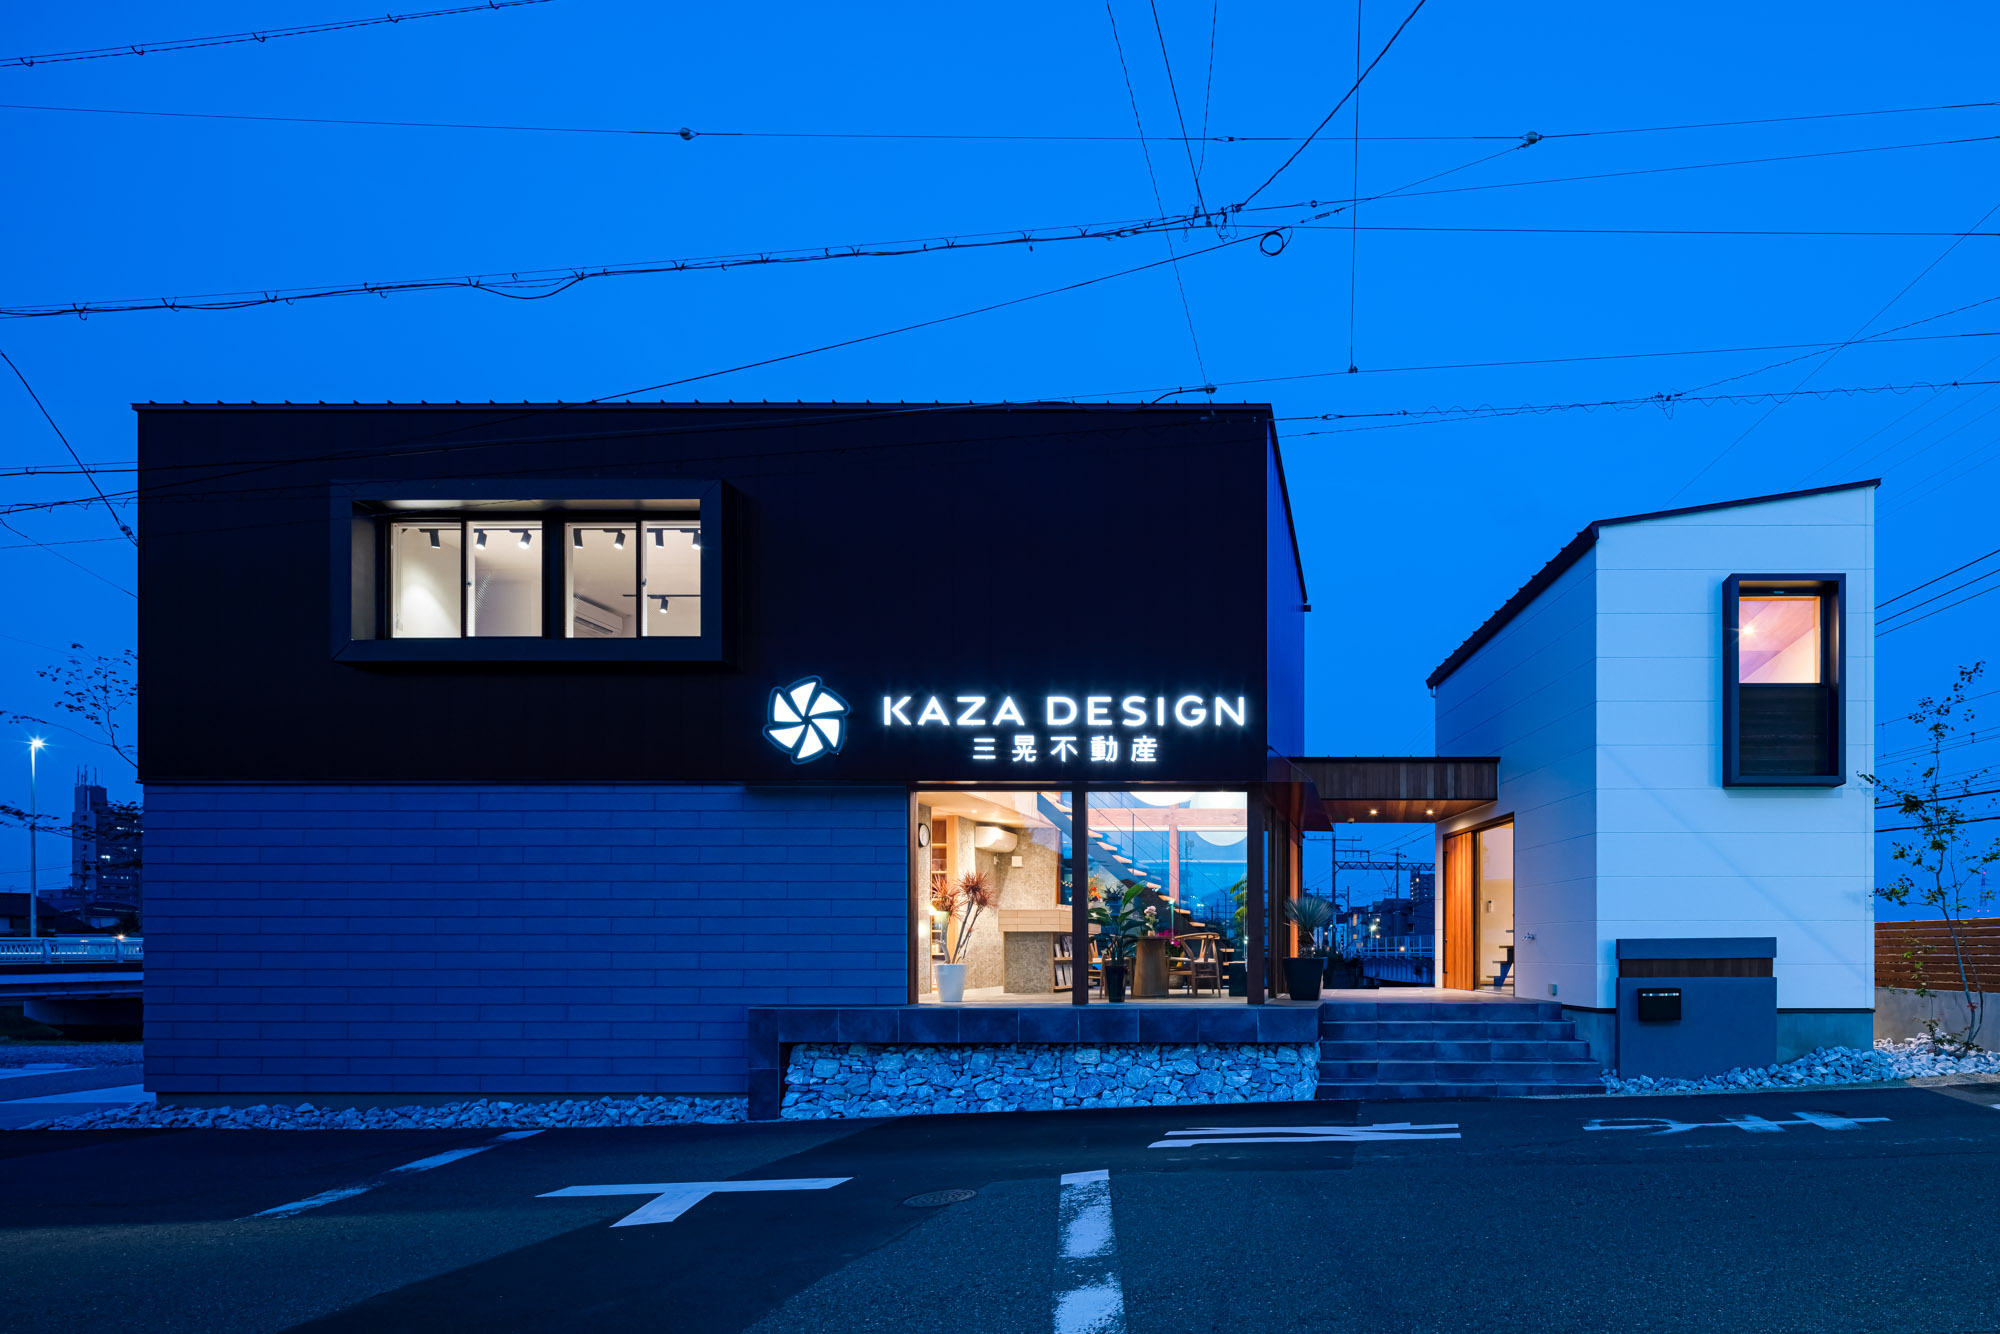 「KAZA DESIGN」のロゴ看板が映える。道路からの通行人も店内を通して戸田川が見渡すことができ...